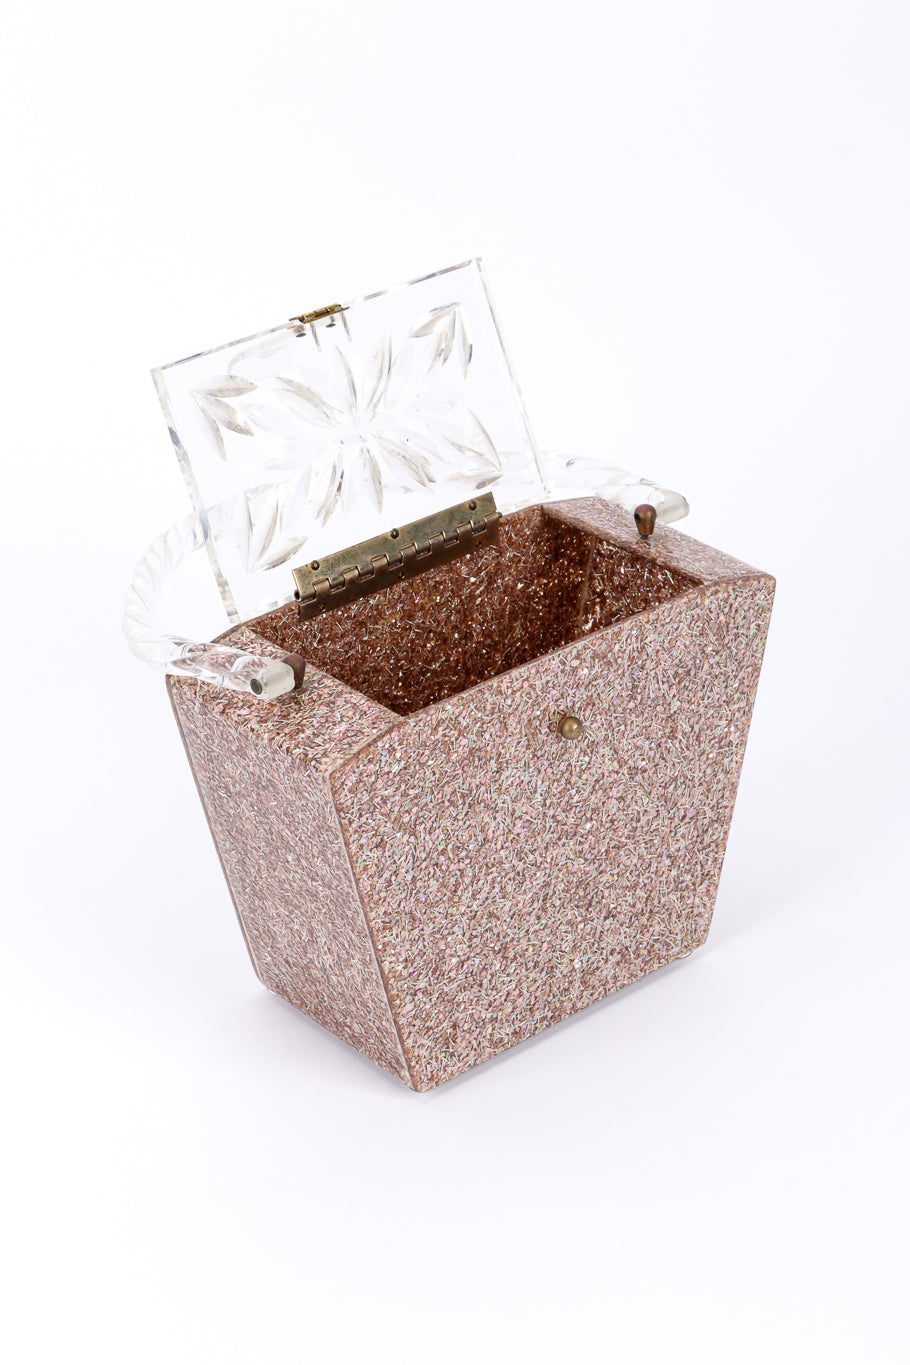 Vintage Confetti Lucite Box Bag 3/4 front open lid @recessla